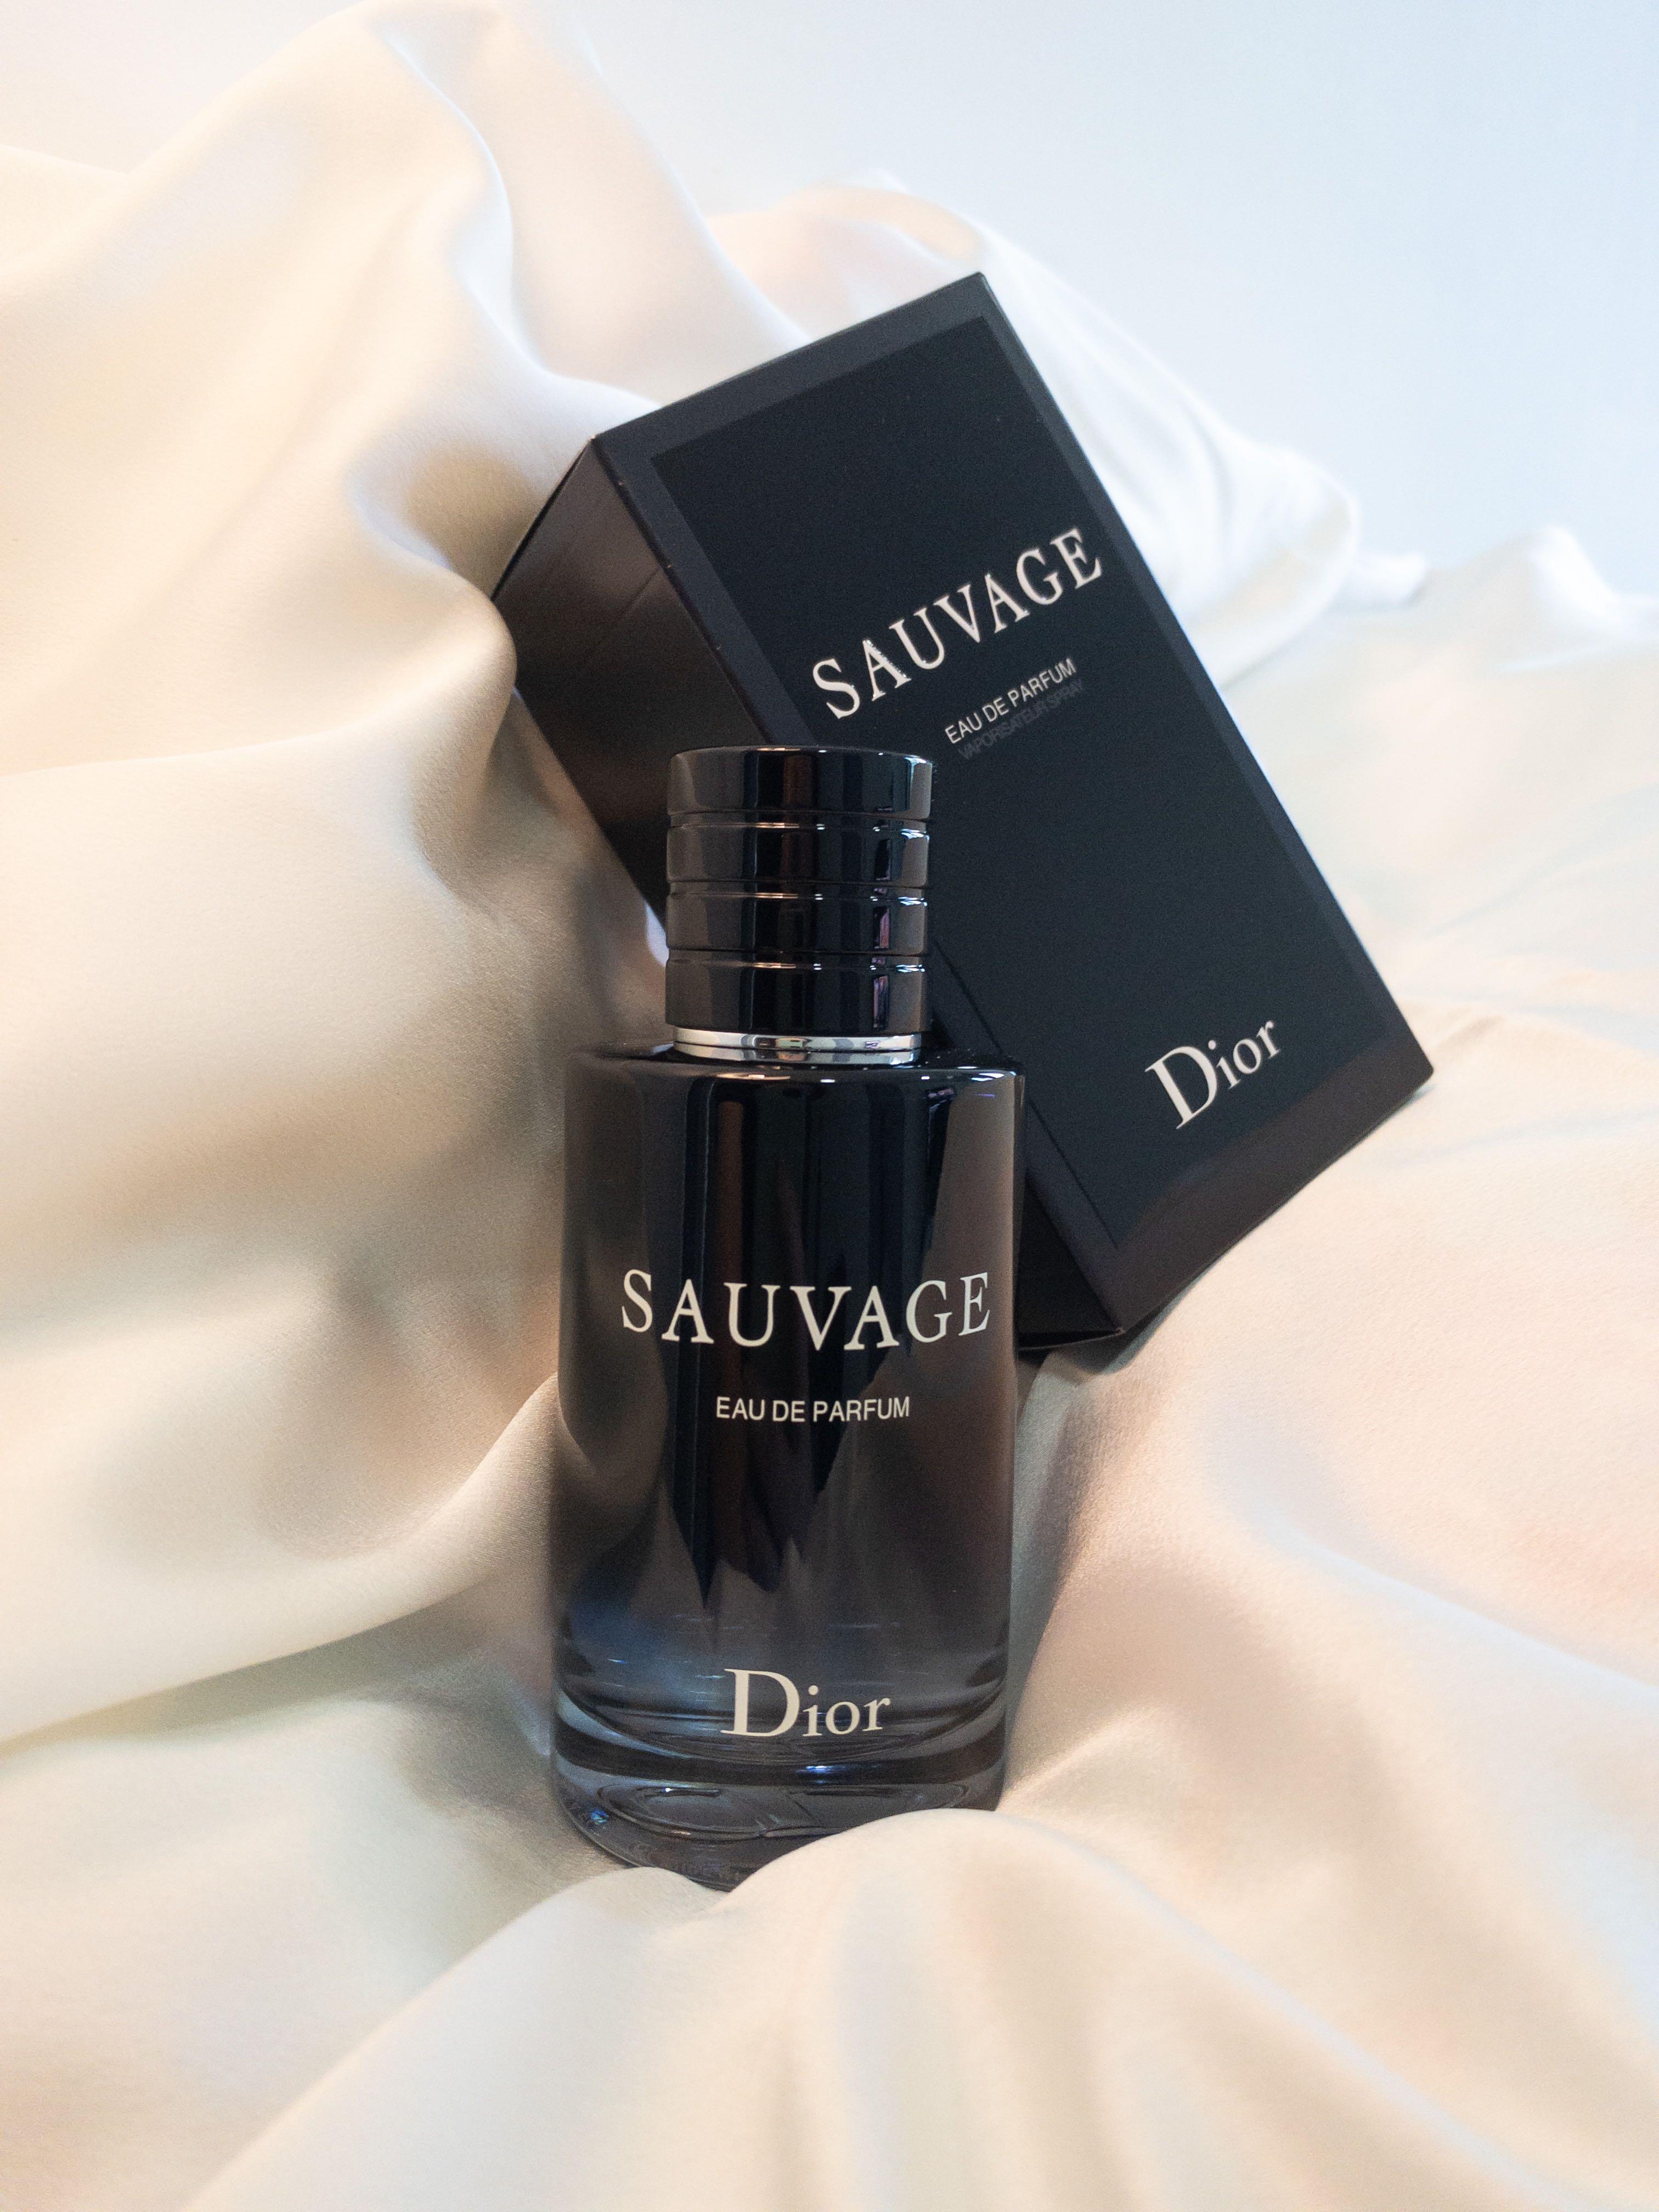 Amazoncom  Christian Dior Sauvage Eau De Parfum Spray For Men 34 Ounce   Beauty  Personal Care